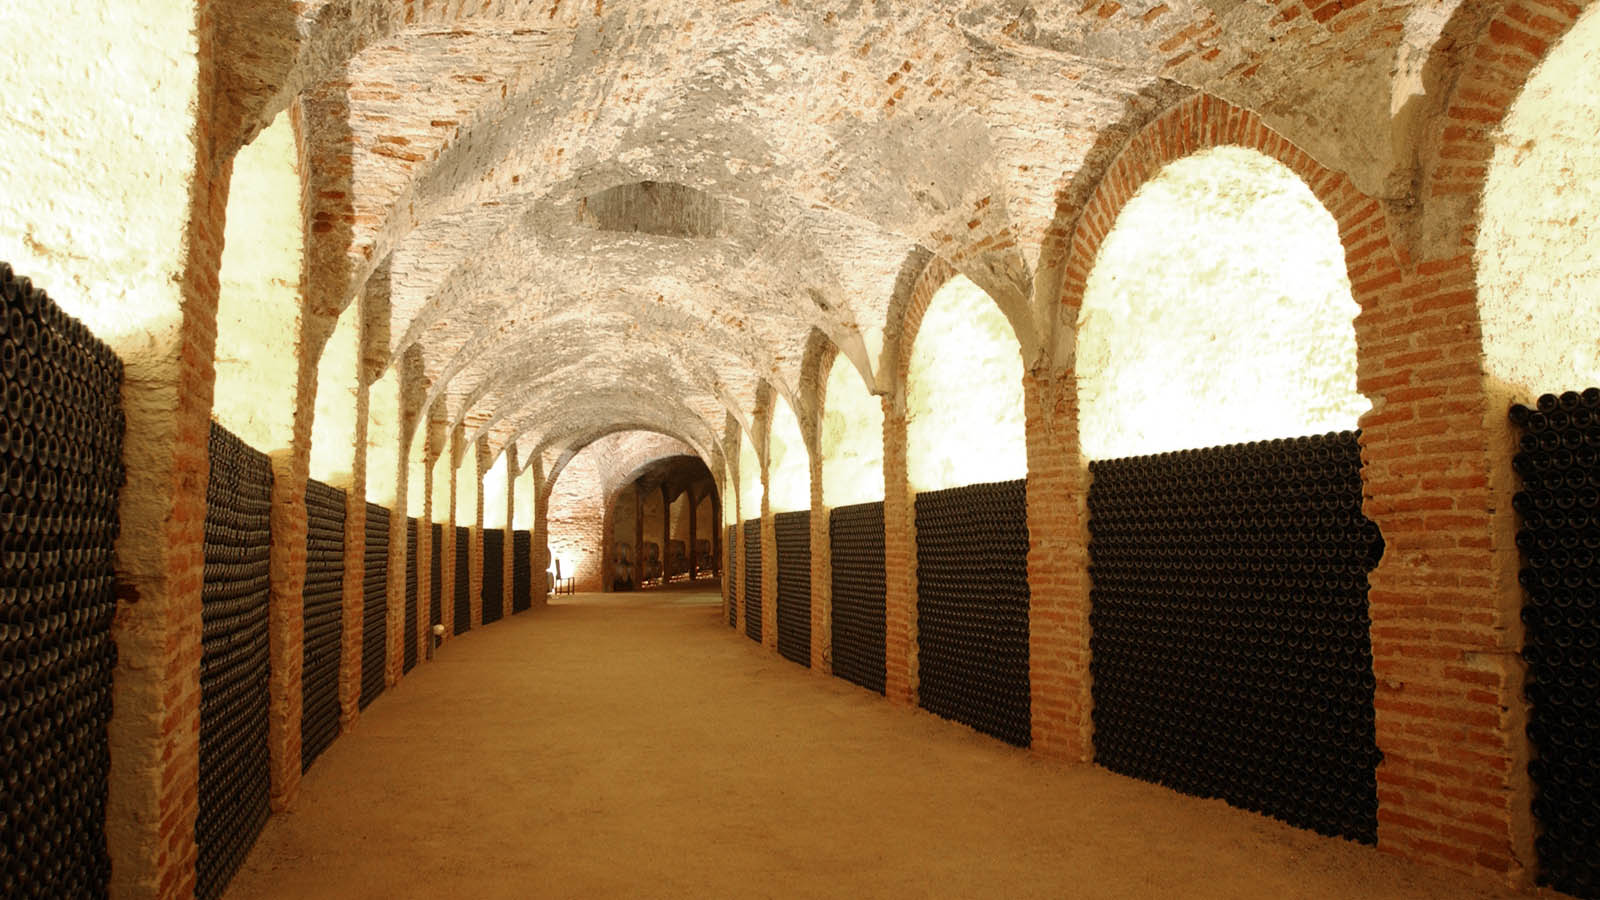 Bodega de Carlos III. El ramal principal y de mayor longitud estaba dedicado inicialmente a conservar el vino. Bajo los arcos estaban las tinajas. En la actualidad su espacio lo ocupan las añadas de los vinos embotellados.